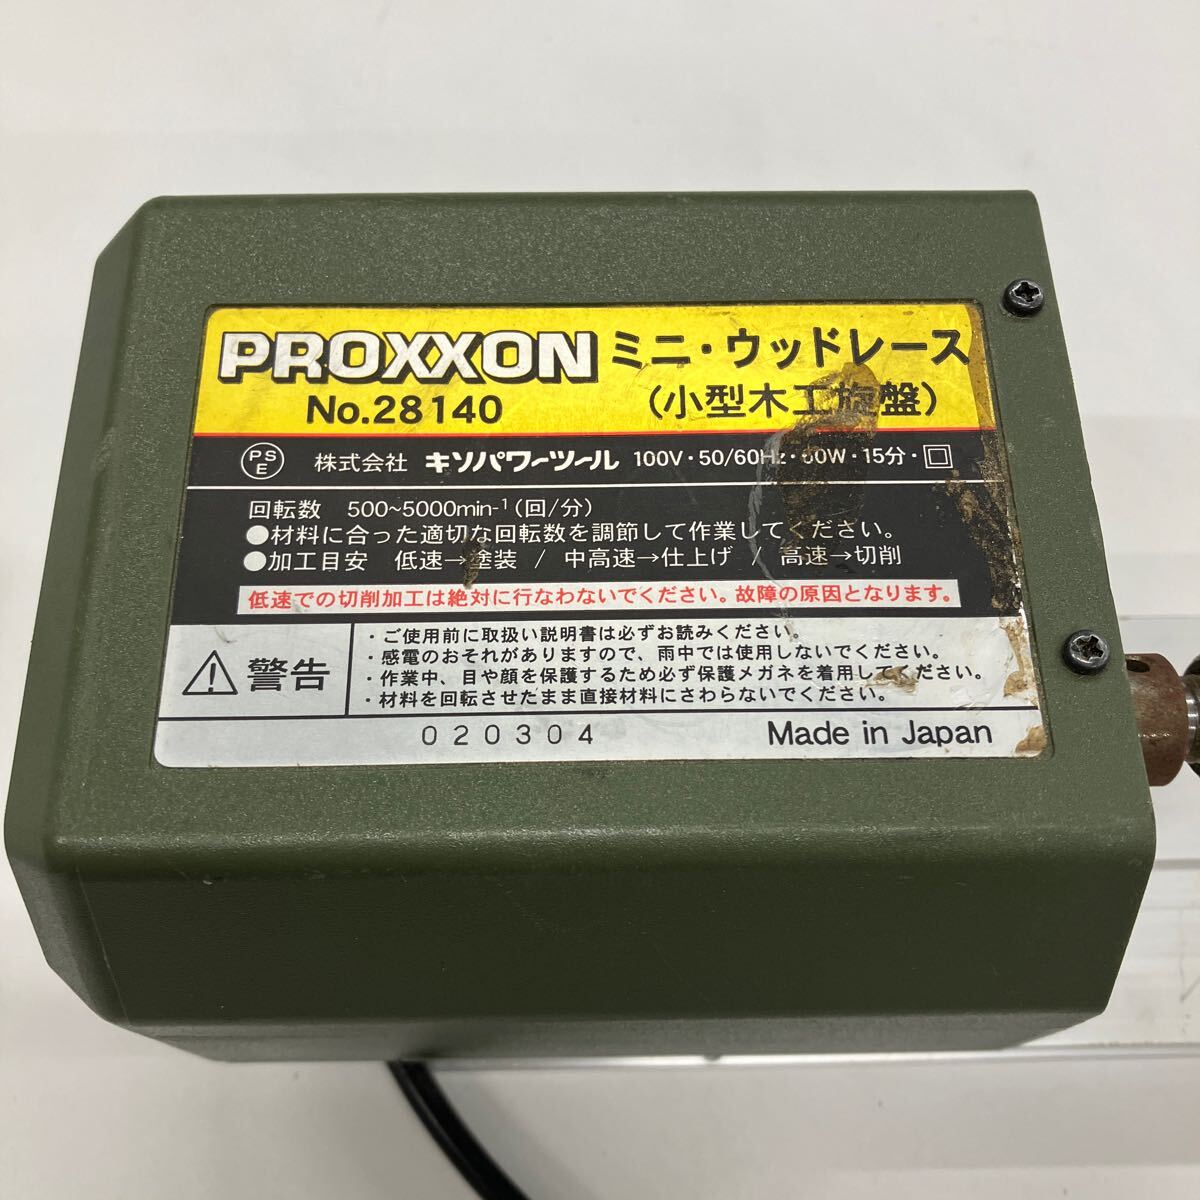 0604u0129 プロクソン(PROXXON) ミニウッドレース 可変速 小型卓上木工旋盤 ウキ・ルアーの制作に便利 No.28140の画像4